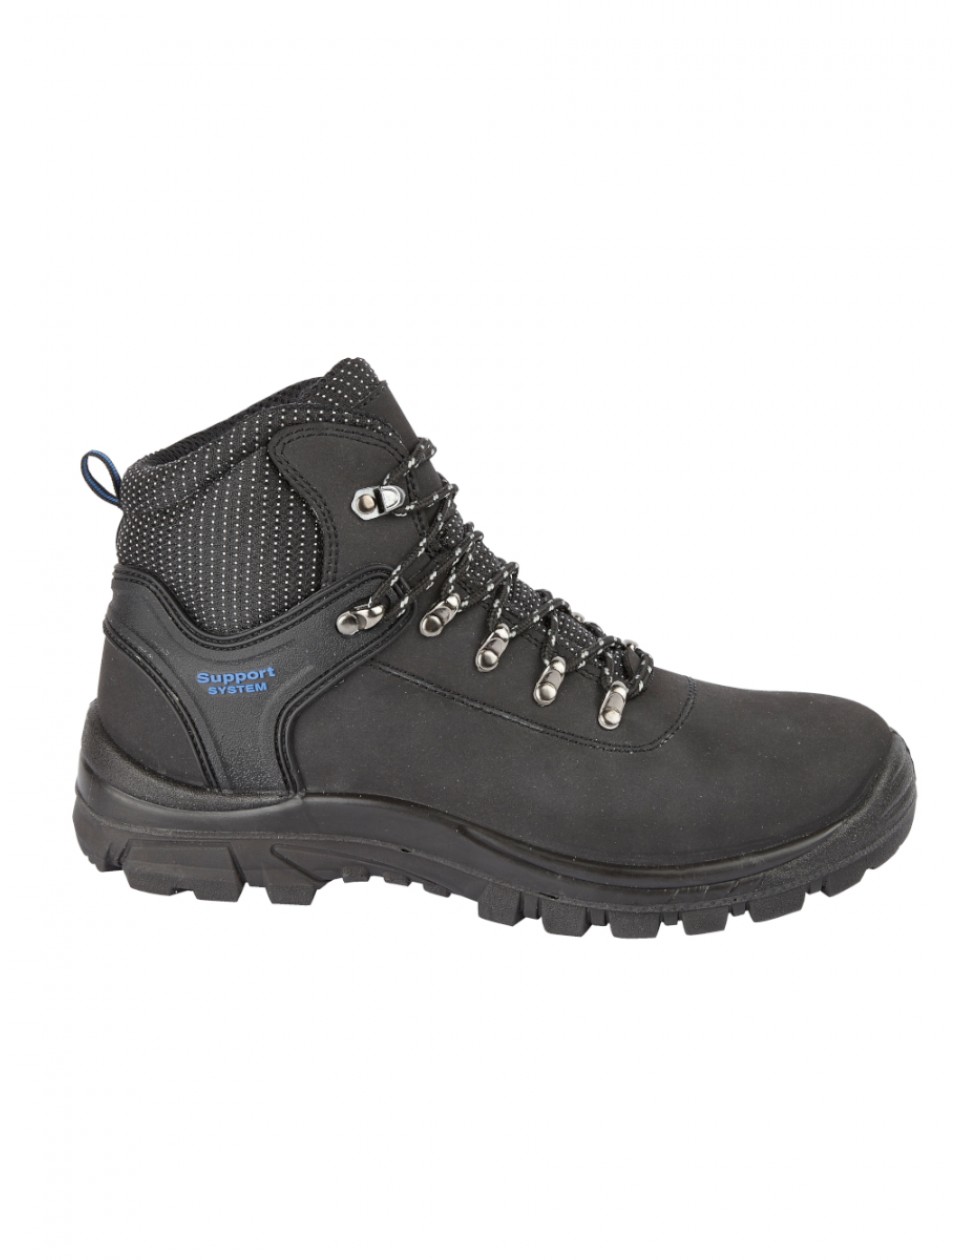 HIMALAYAN 2601 Hiker boots